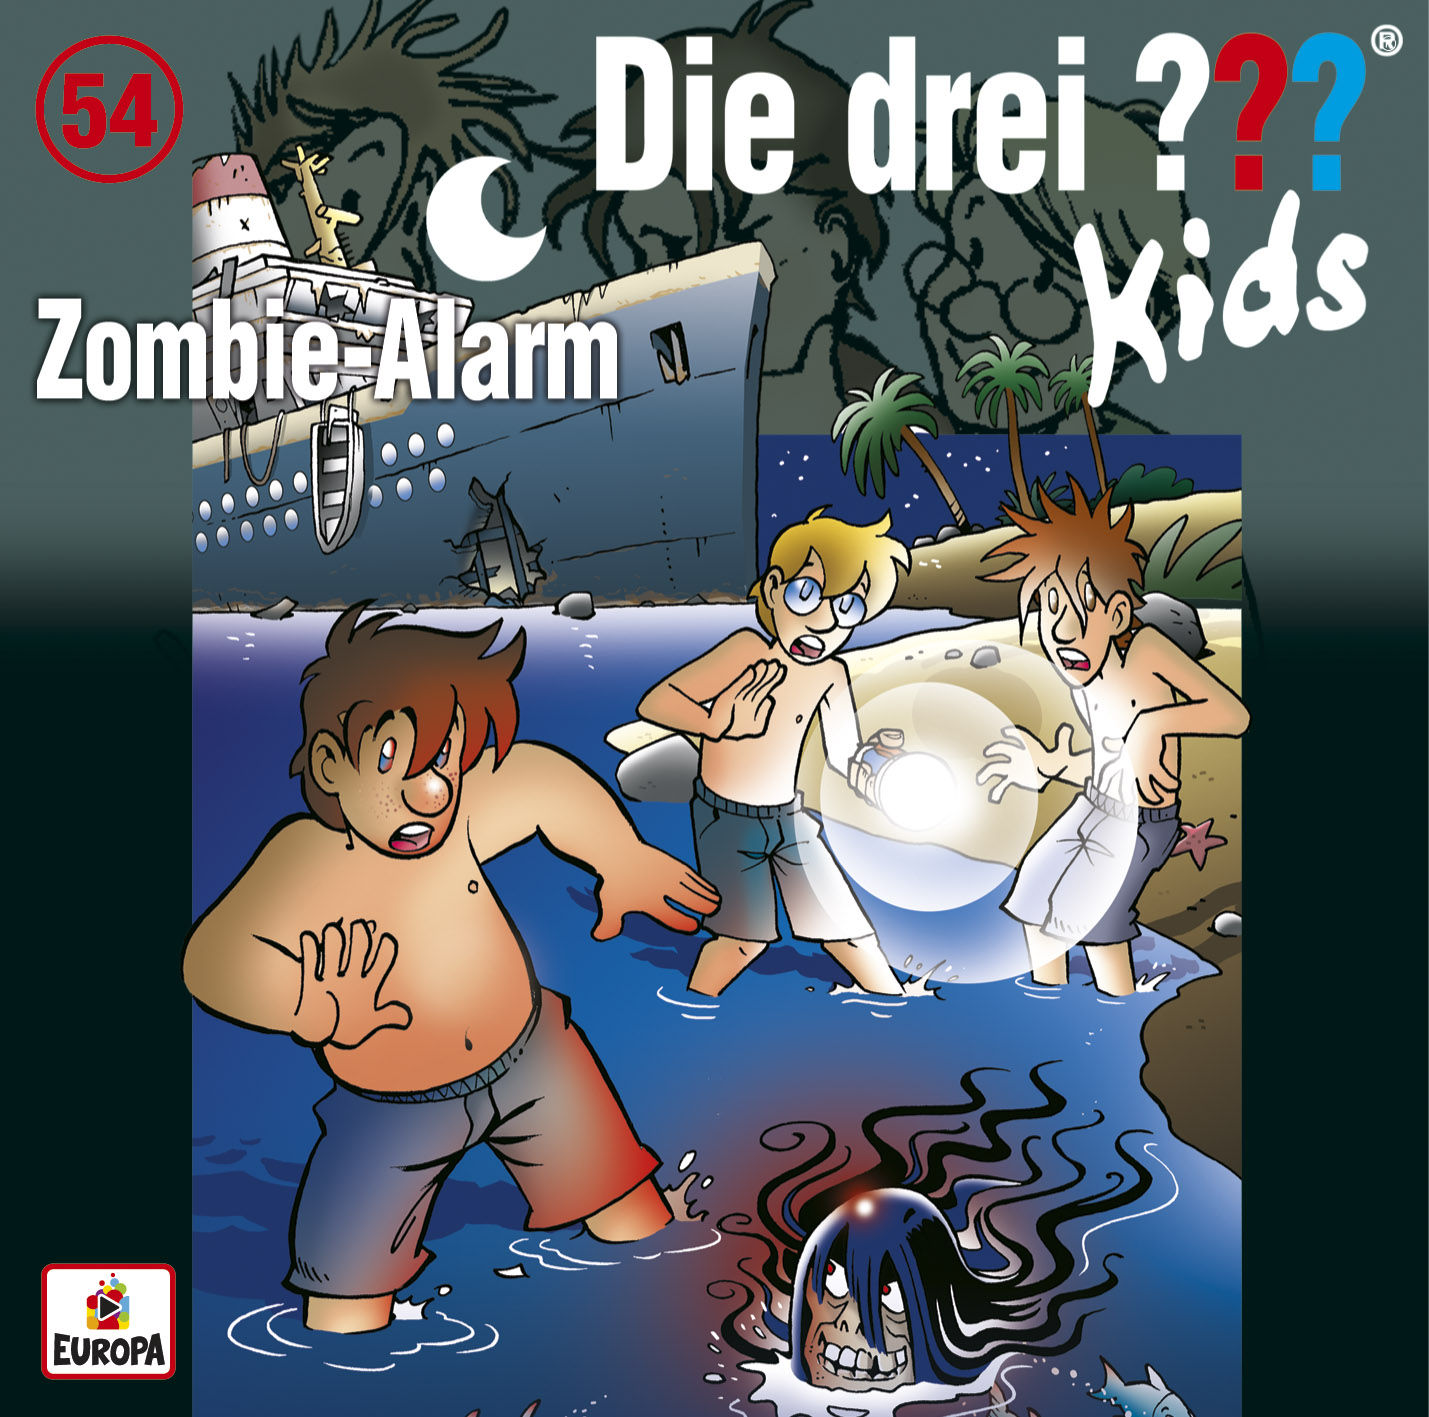 Die drei ??? Kids: Zombie-Alarm